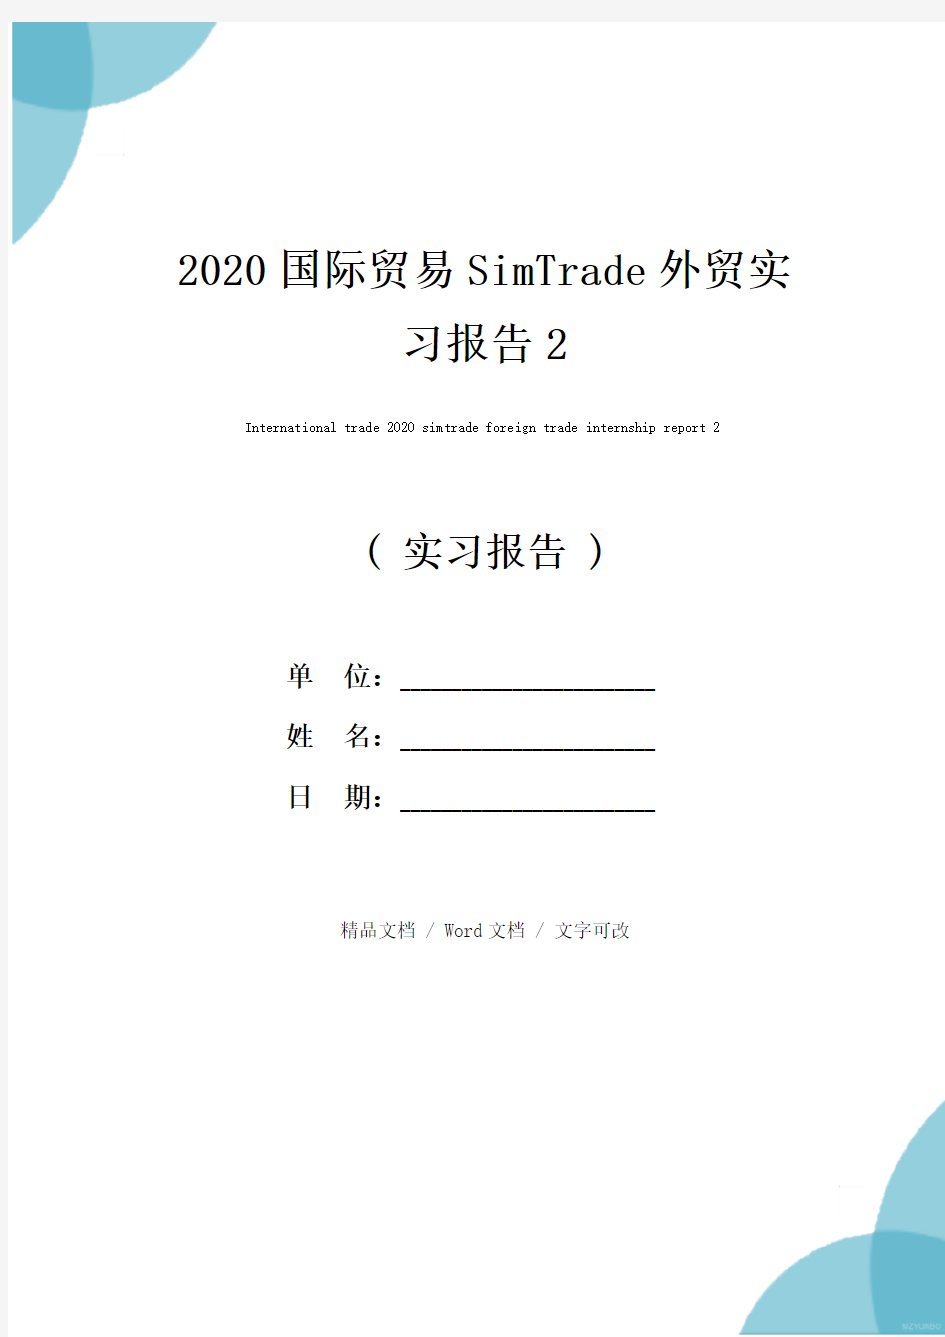 2020国际贸易SimTrade外贸实习报告2